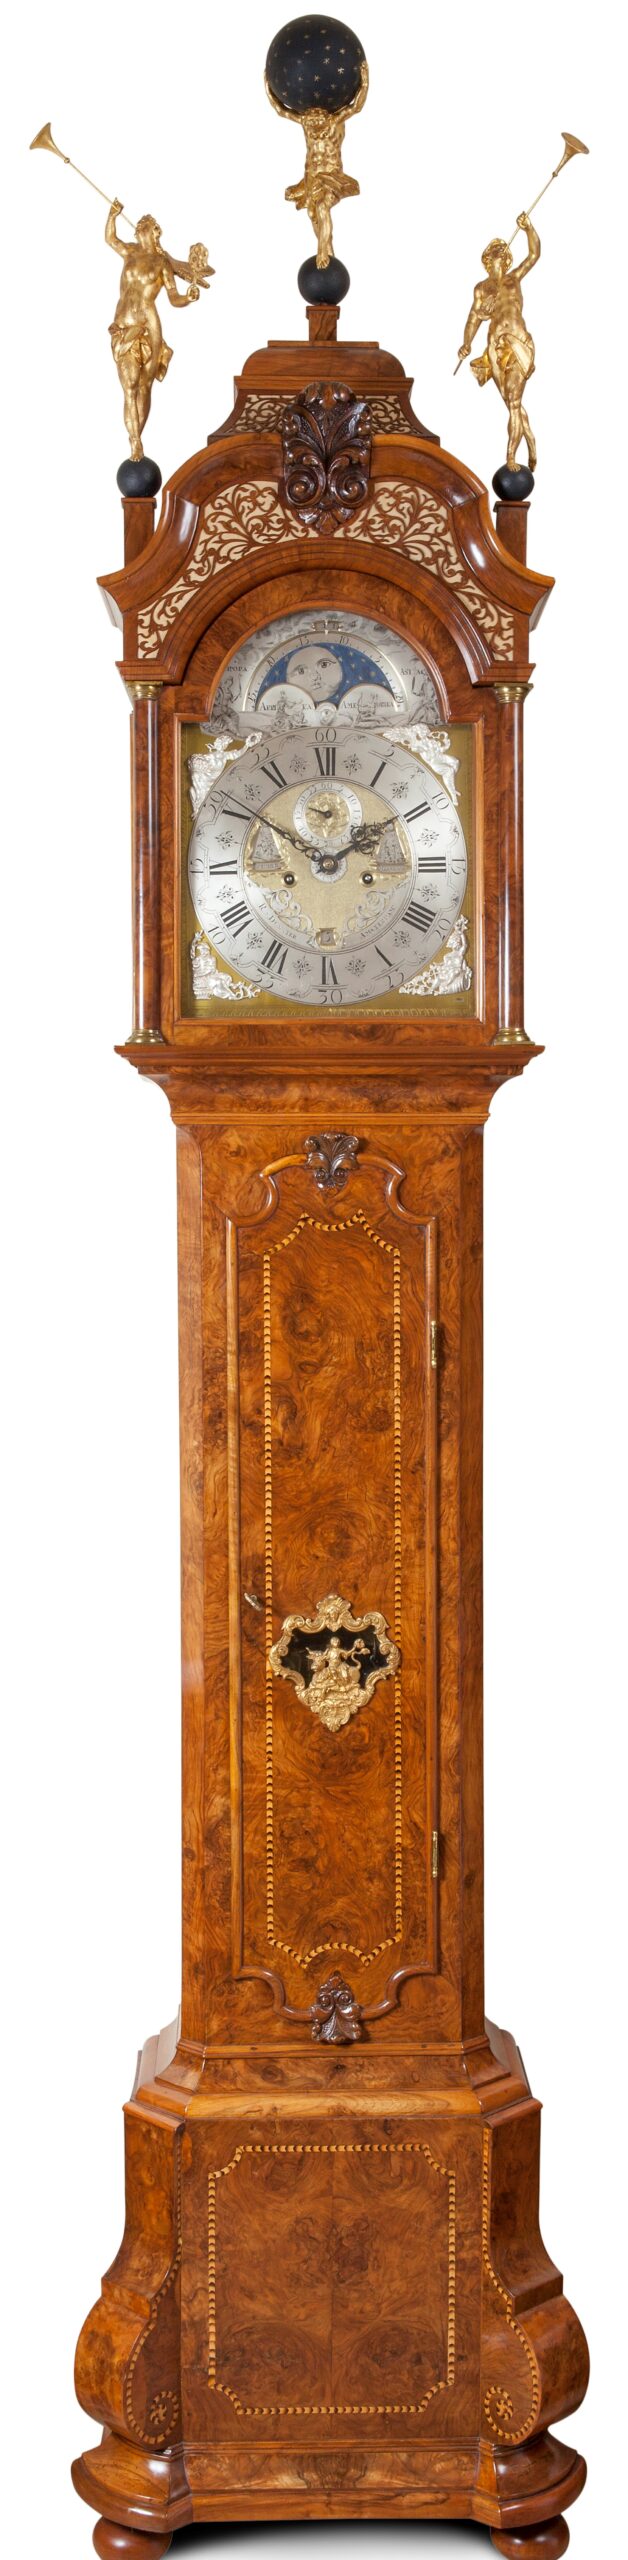 Ontmoedigen terrorisme Vul in Collectie antieke klokken, staande klok Dunster 18e eeuw